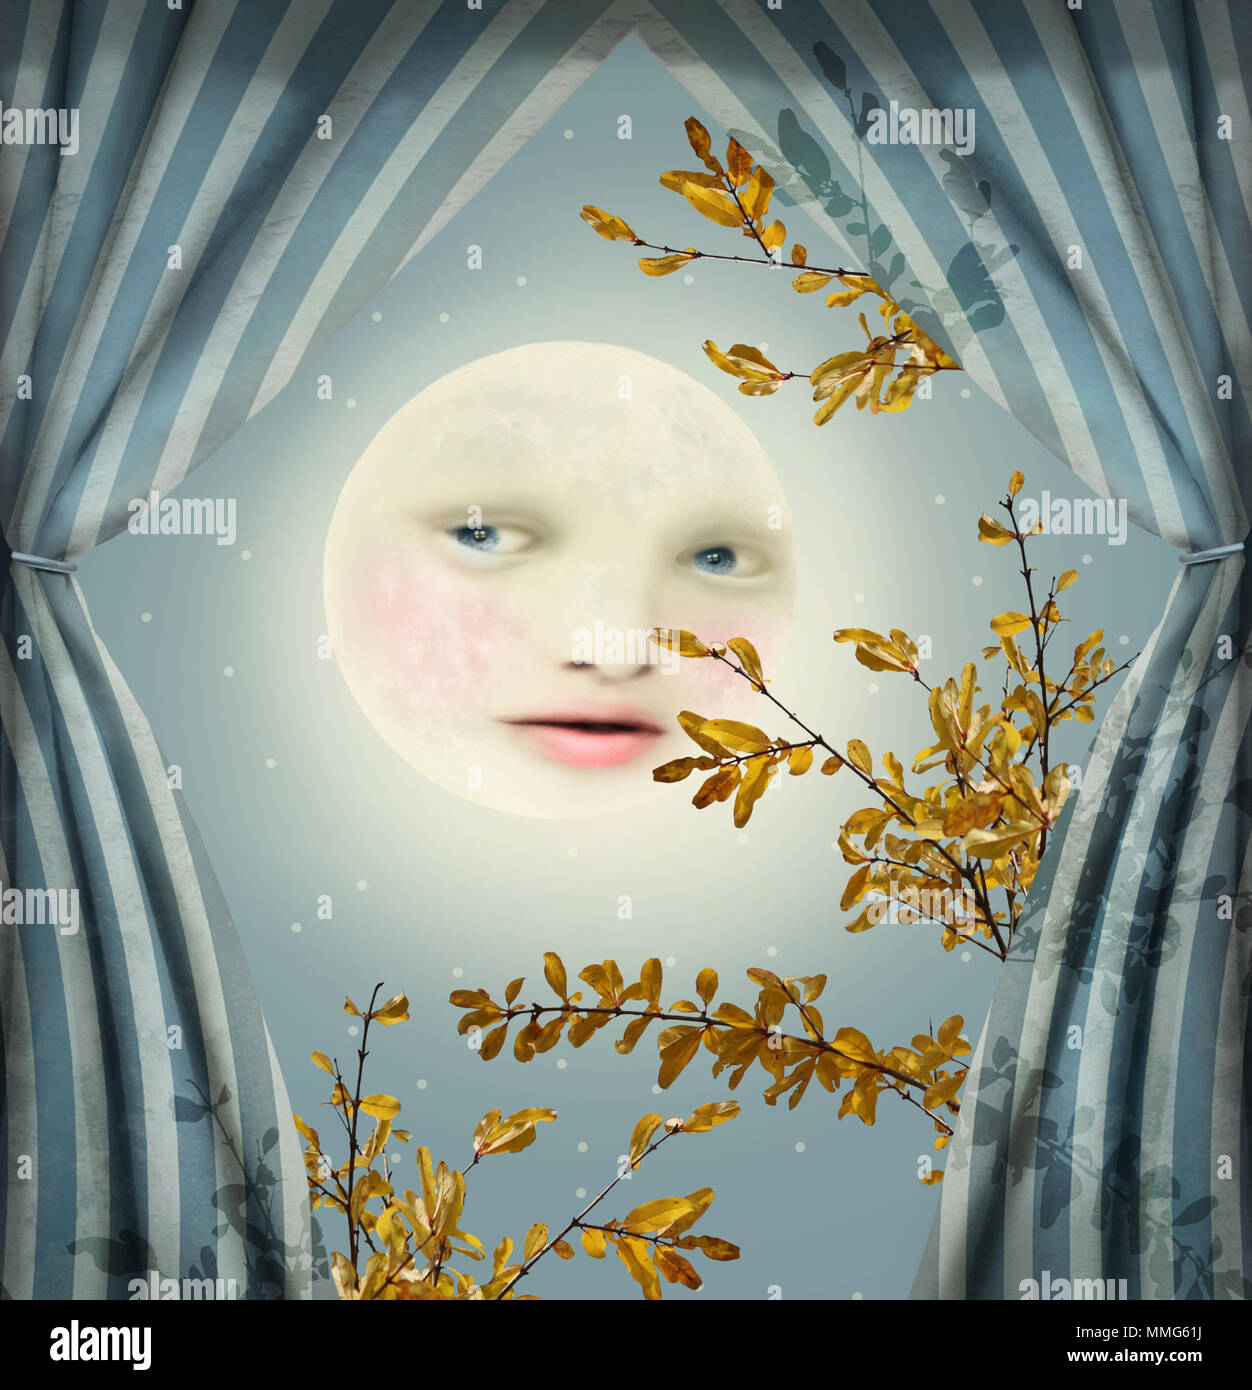 Immagine di fantasia che rappresenta una luna piena con una donna faccia tra due tendine Foto Stock